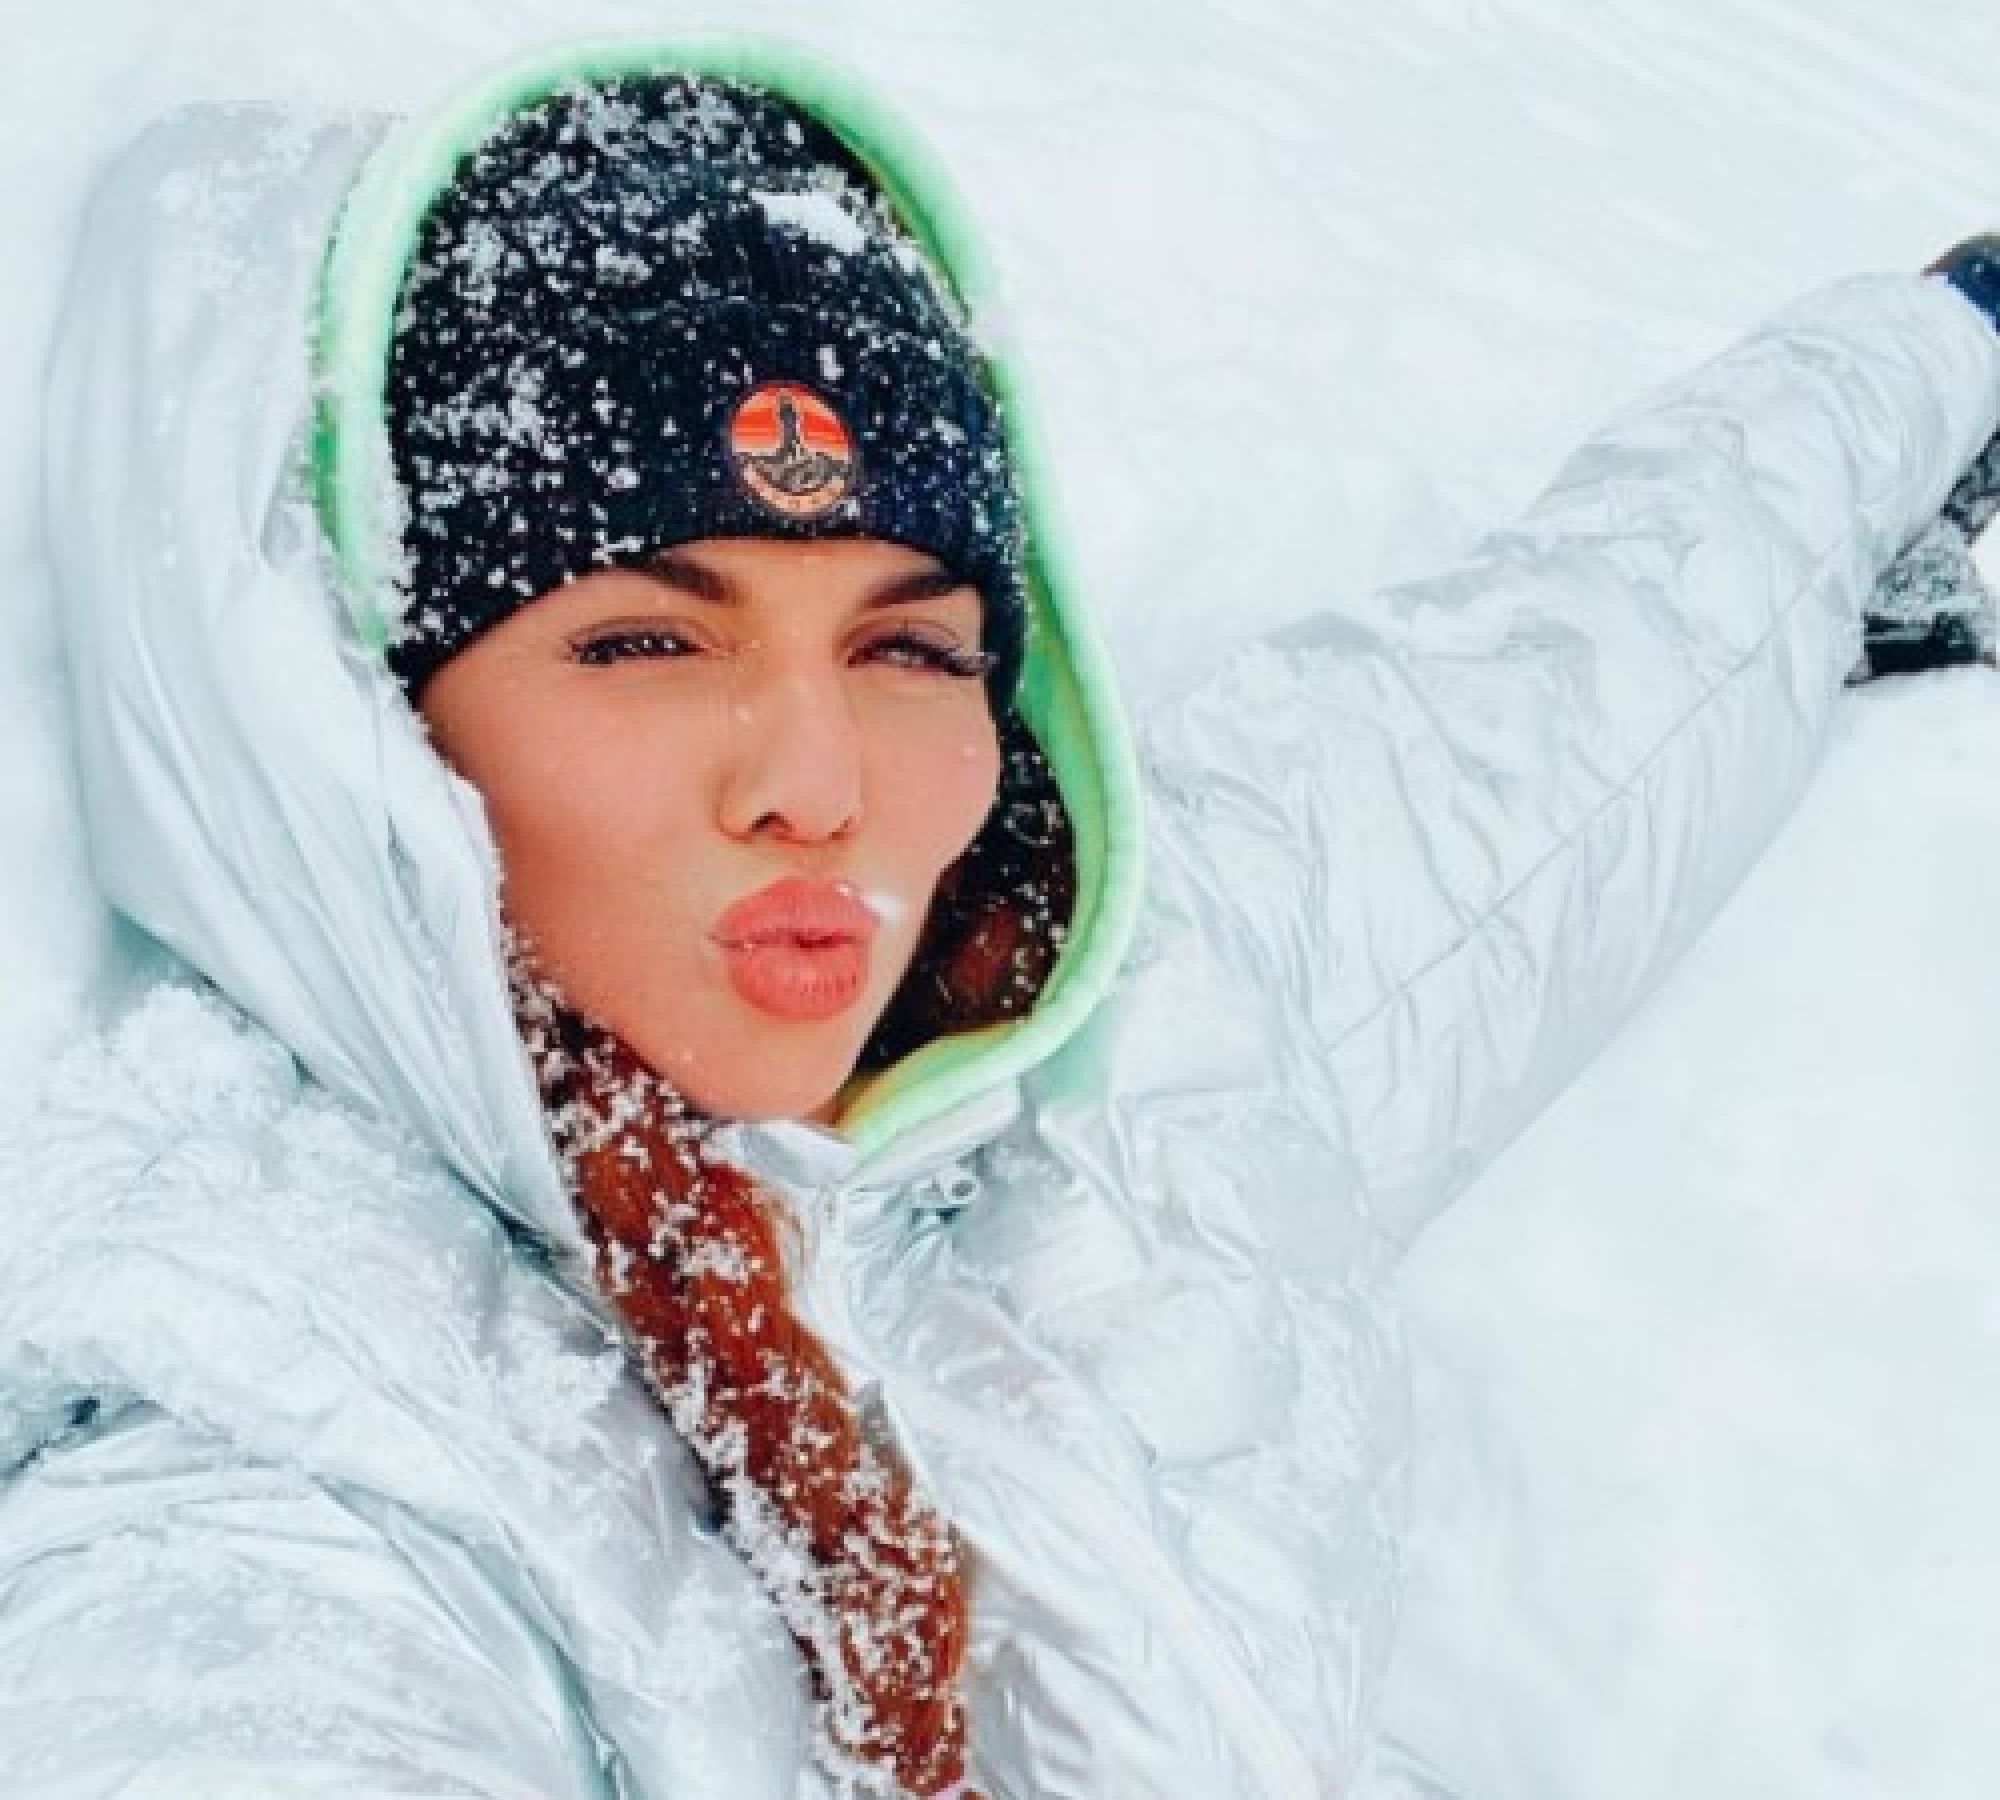 Анна Седокова запустила новый челлендж, цель которого - проверка любви парня к девушке